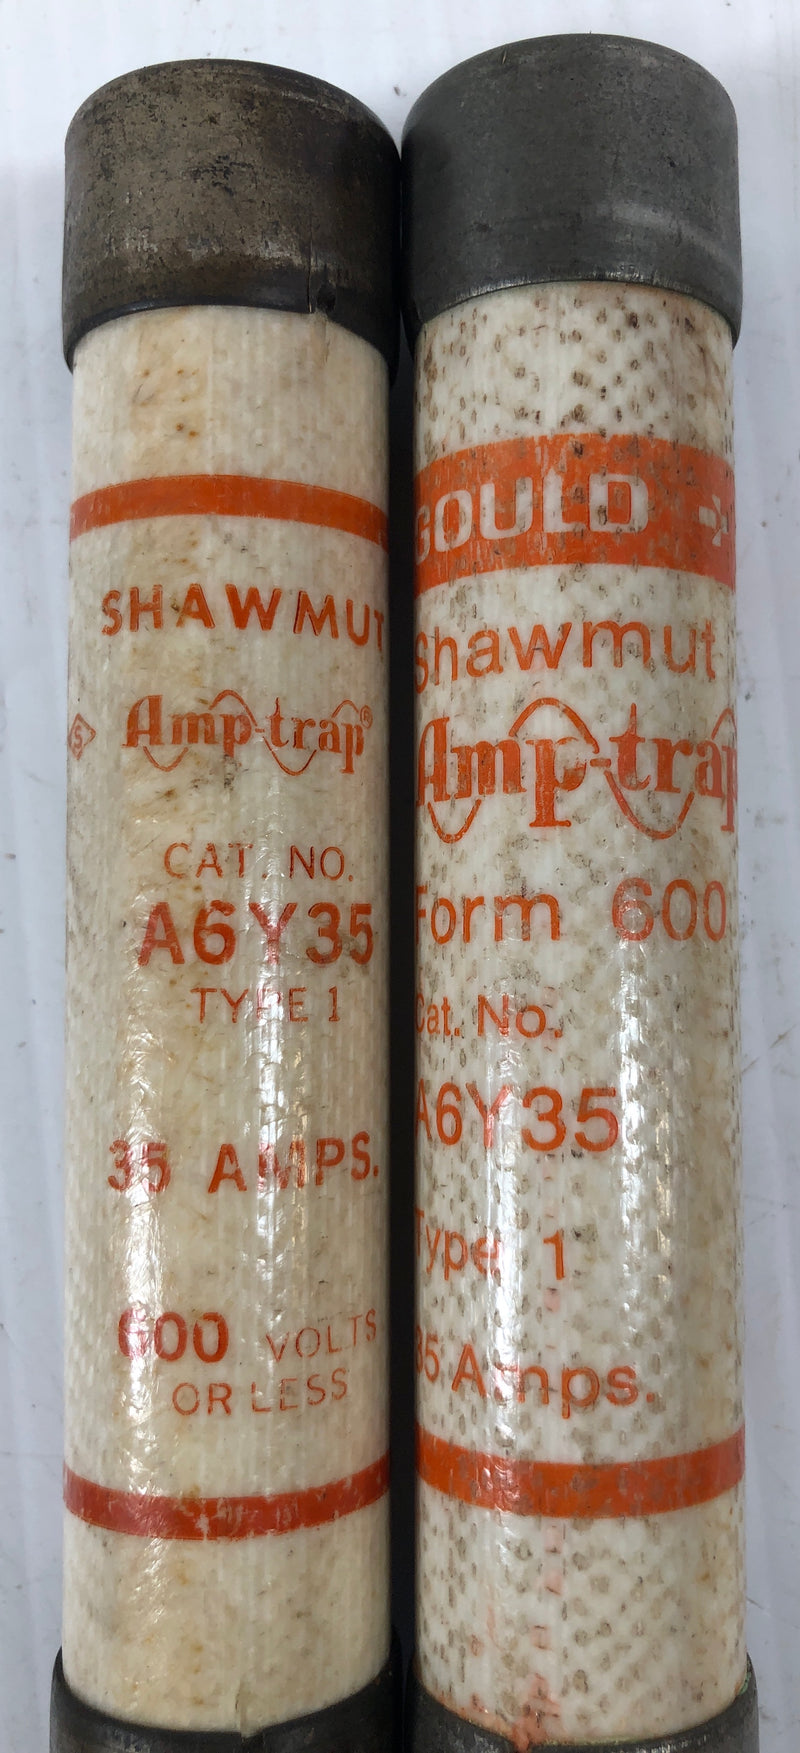 Shawmut Amp-Trap Fuse A6Y35 (Lot of 2)